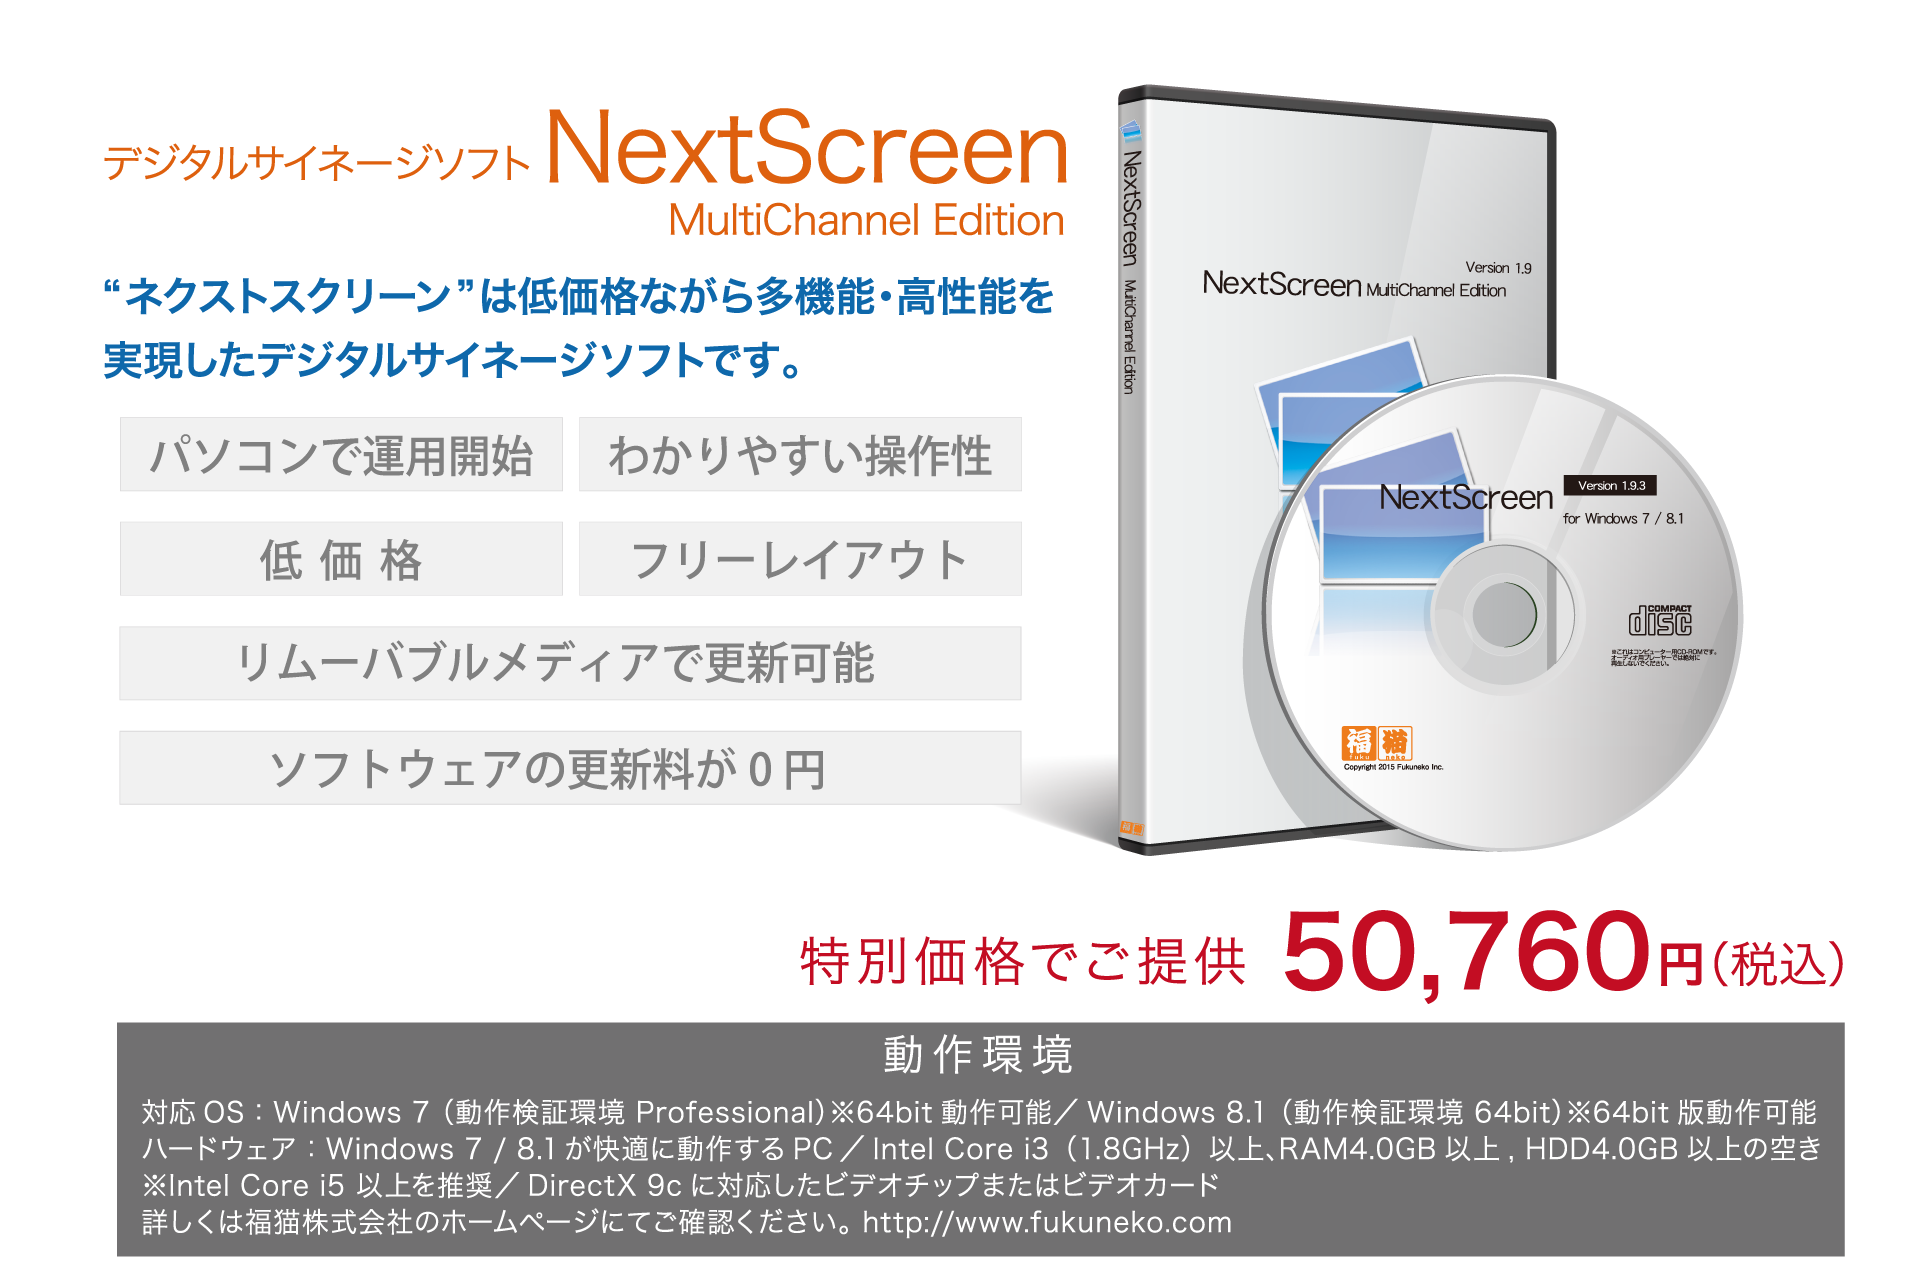 デジタルサイネージソフトNextScreen